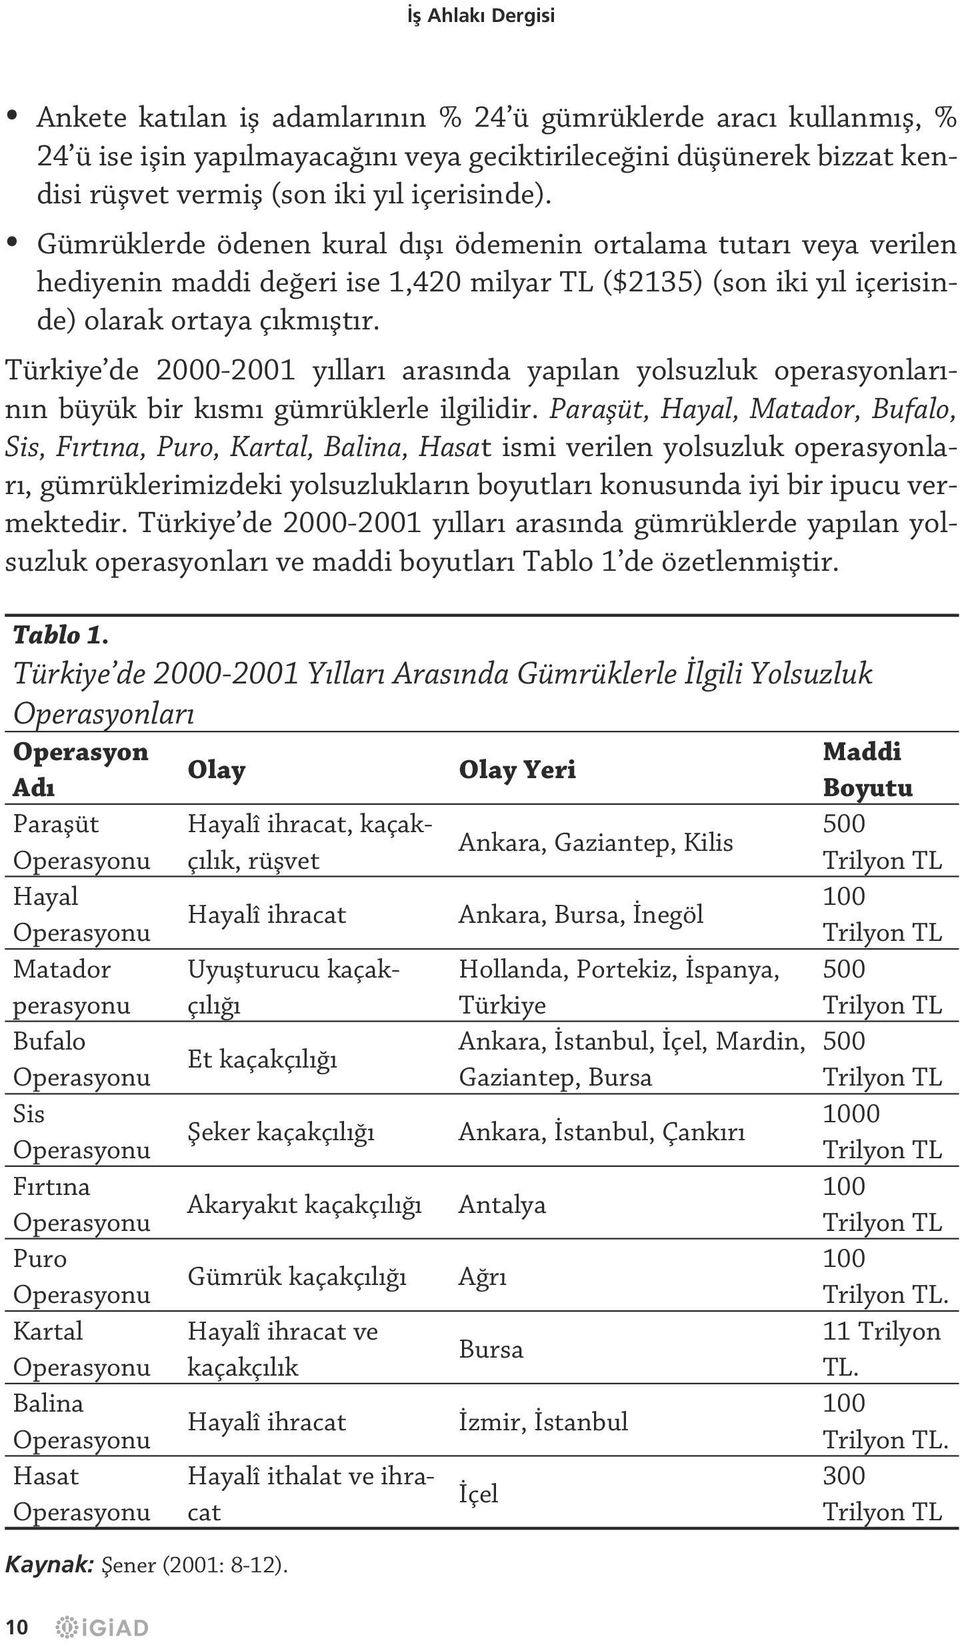 Türkiye de 2000-2001 yılları arasında yapılan yolsuzluk operasyonlarının büyük bir kısmı gümrüklerle ilgilidir.